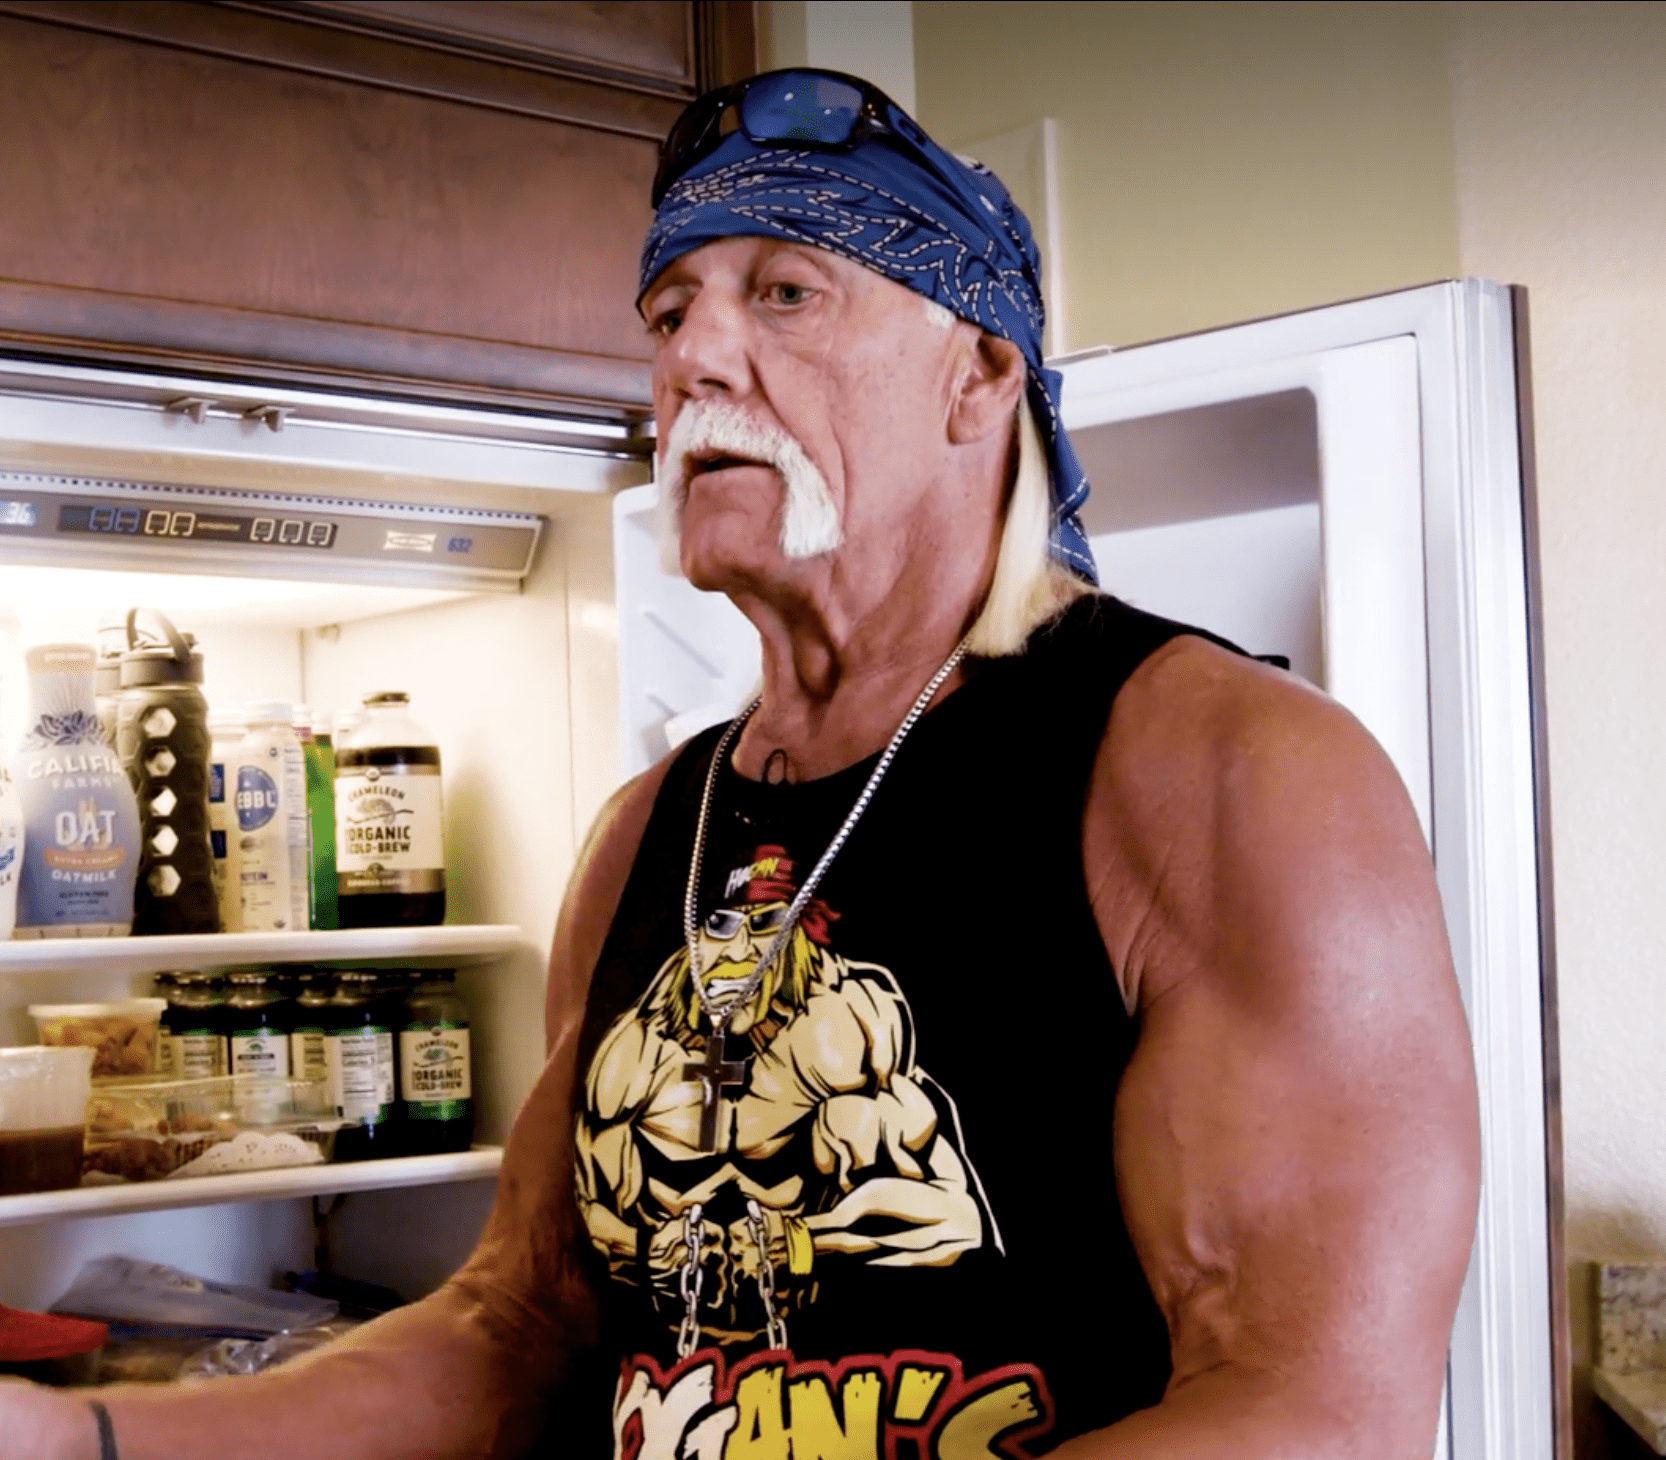 Hulk Hogan in his kitchen